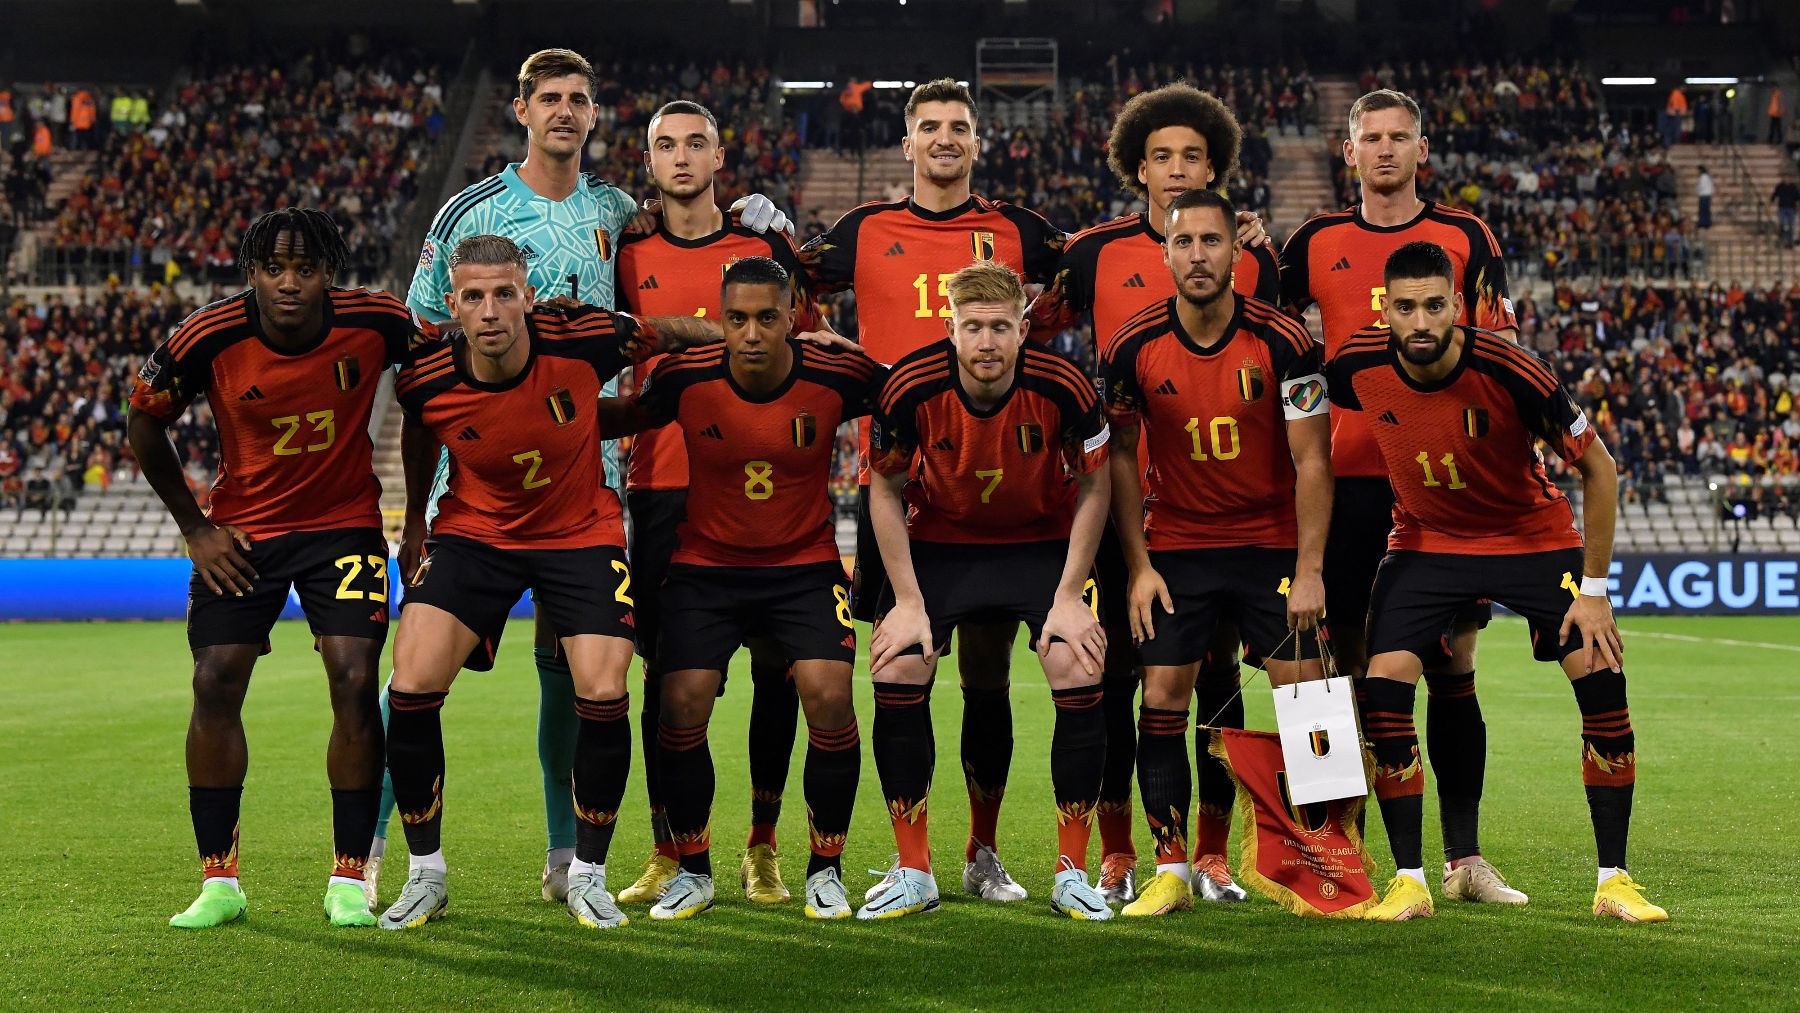 Selección Bélgica para el Mundial de portero, entrenador, estrellas...